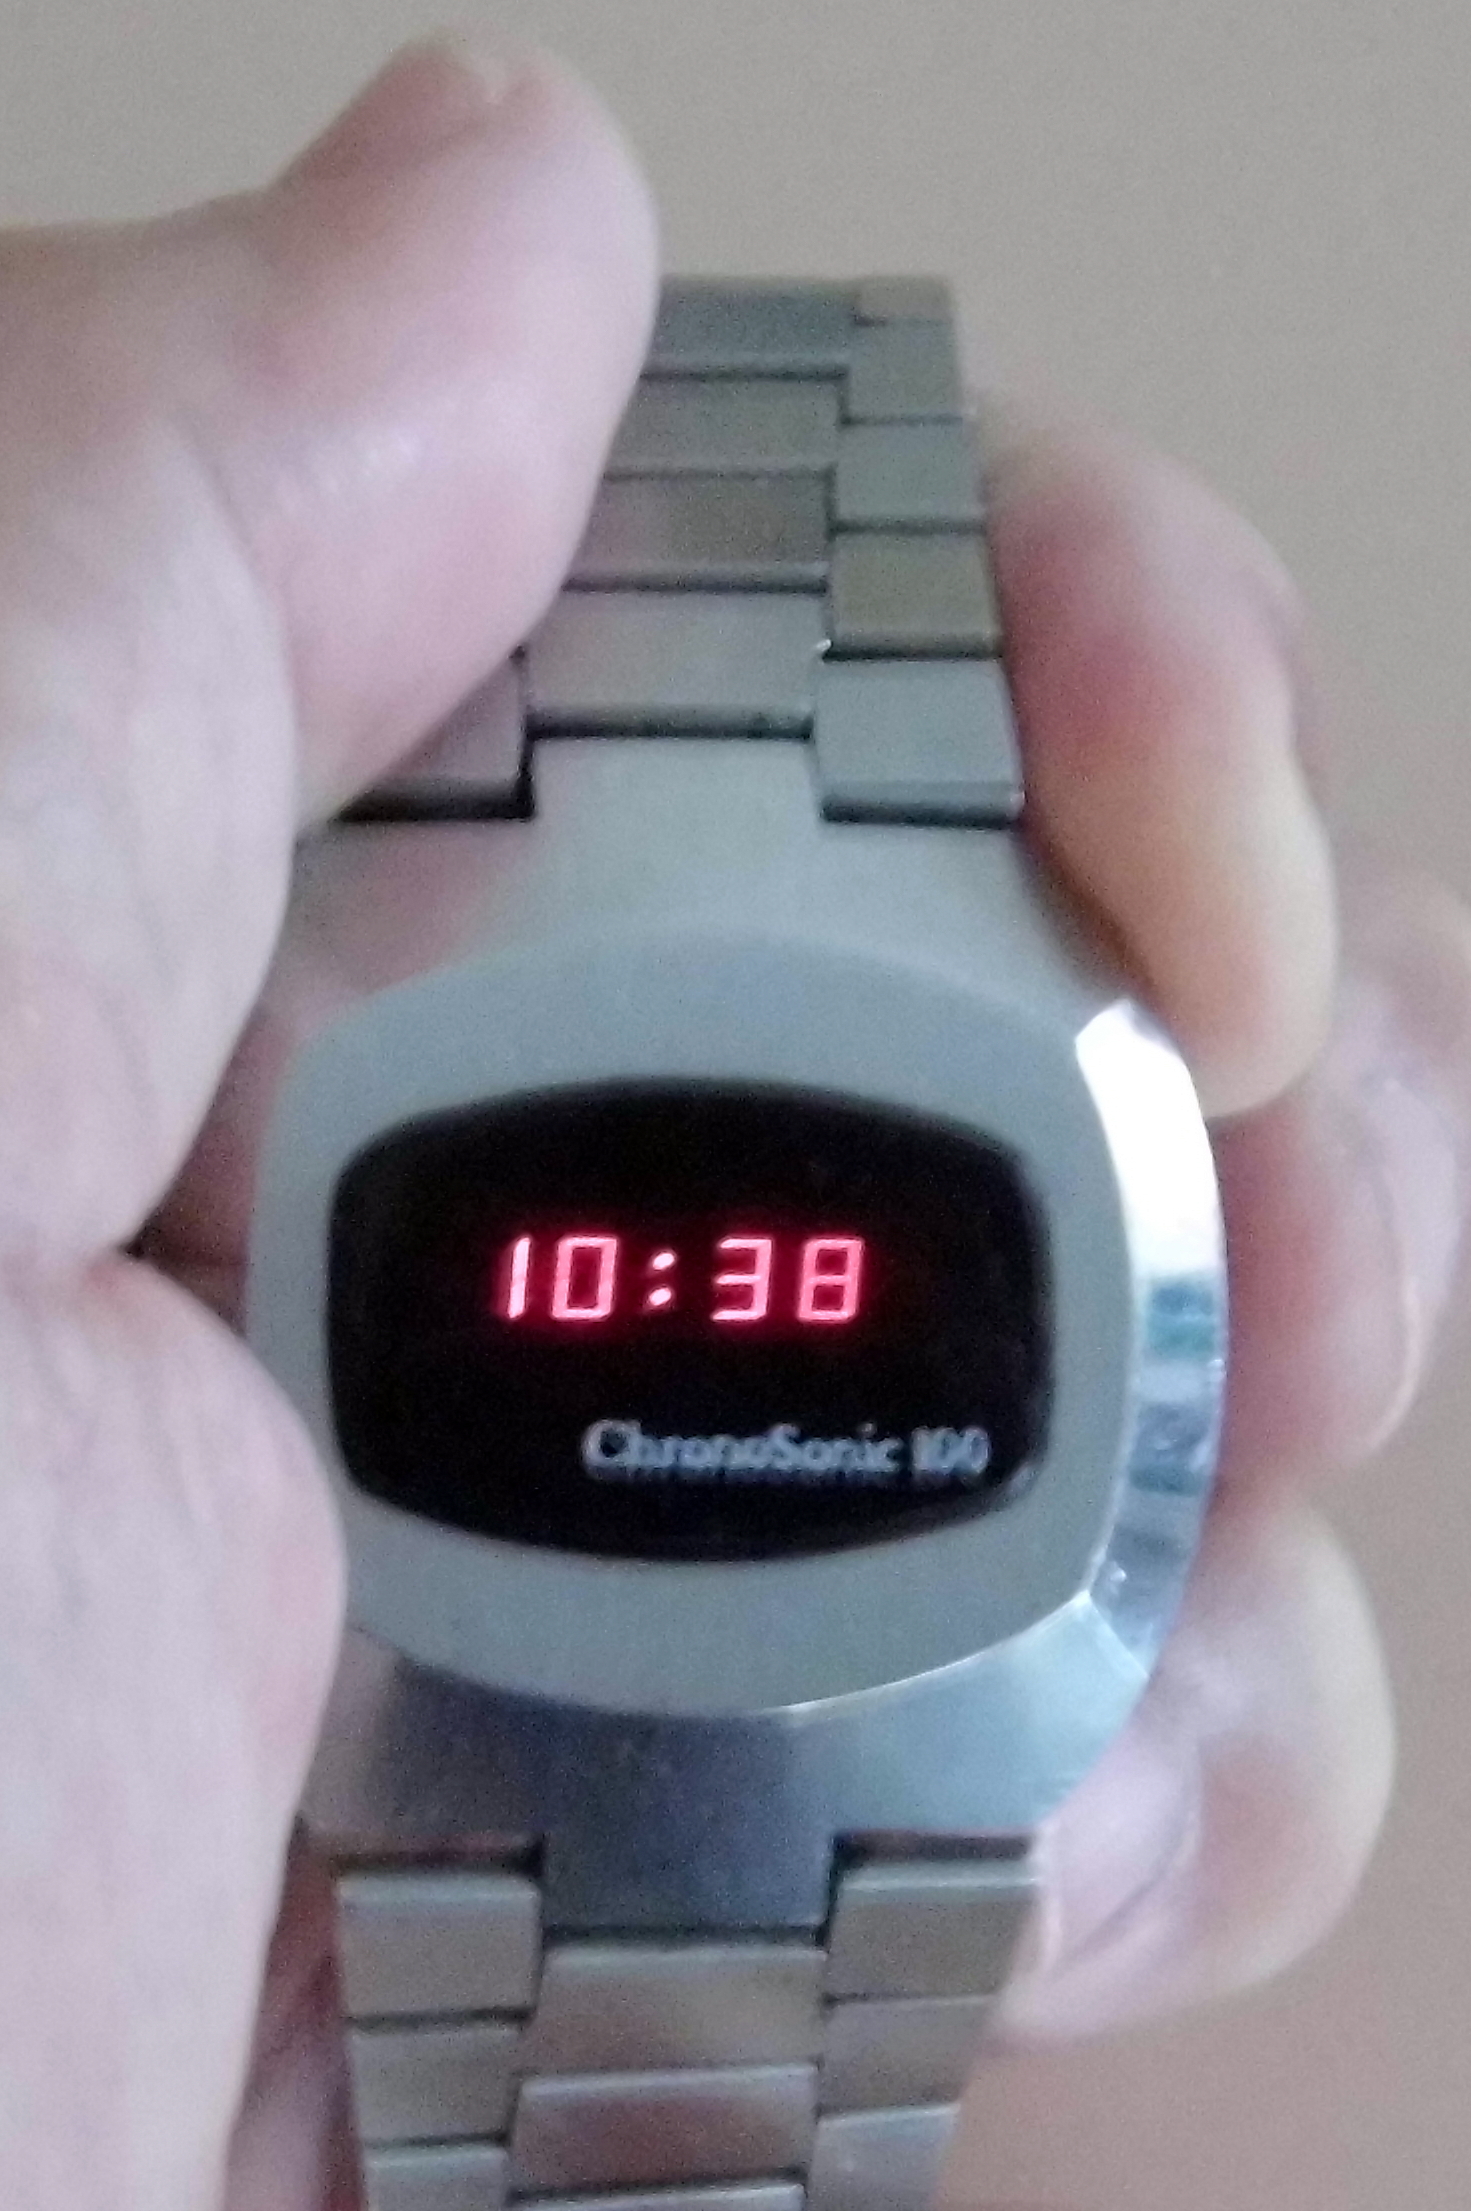 レトロフューチャー Chrono Sonic LED腕時計 100